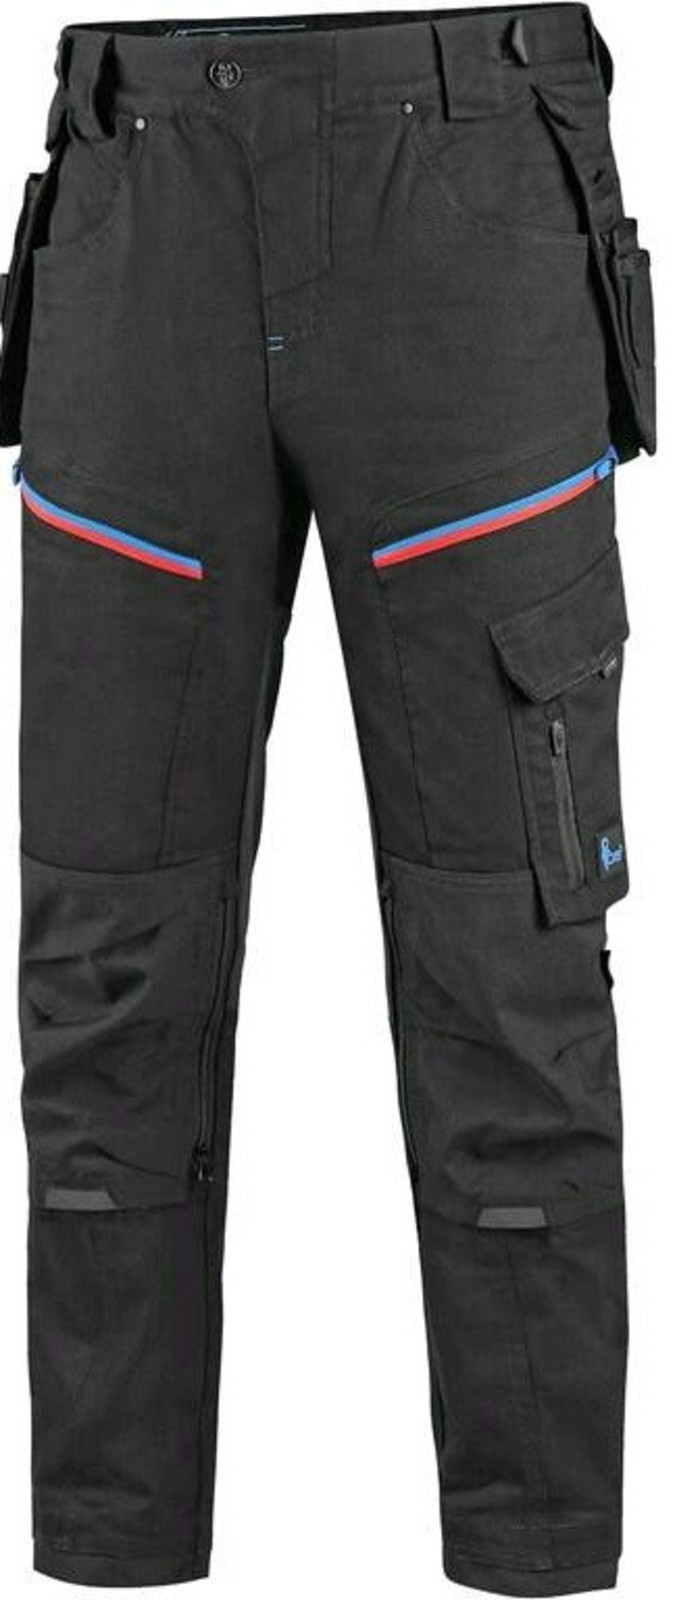 Pánske pracovné nohavice CXS Leonis - veľkosť: 50, farba: čierna/modrá